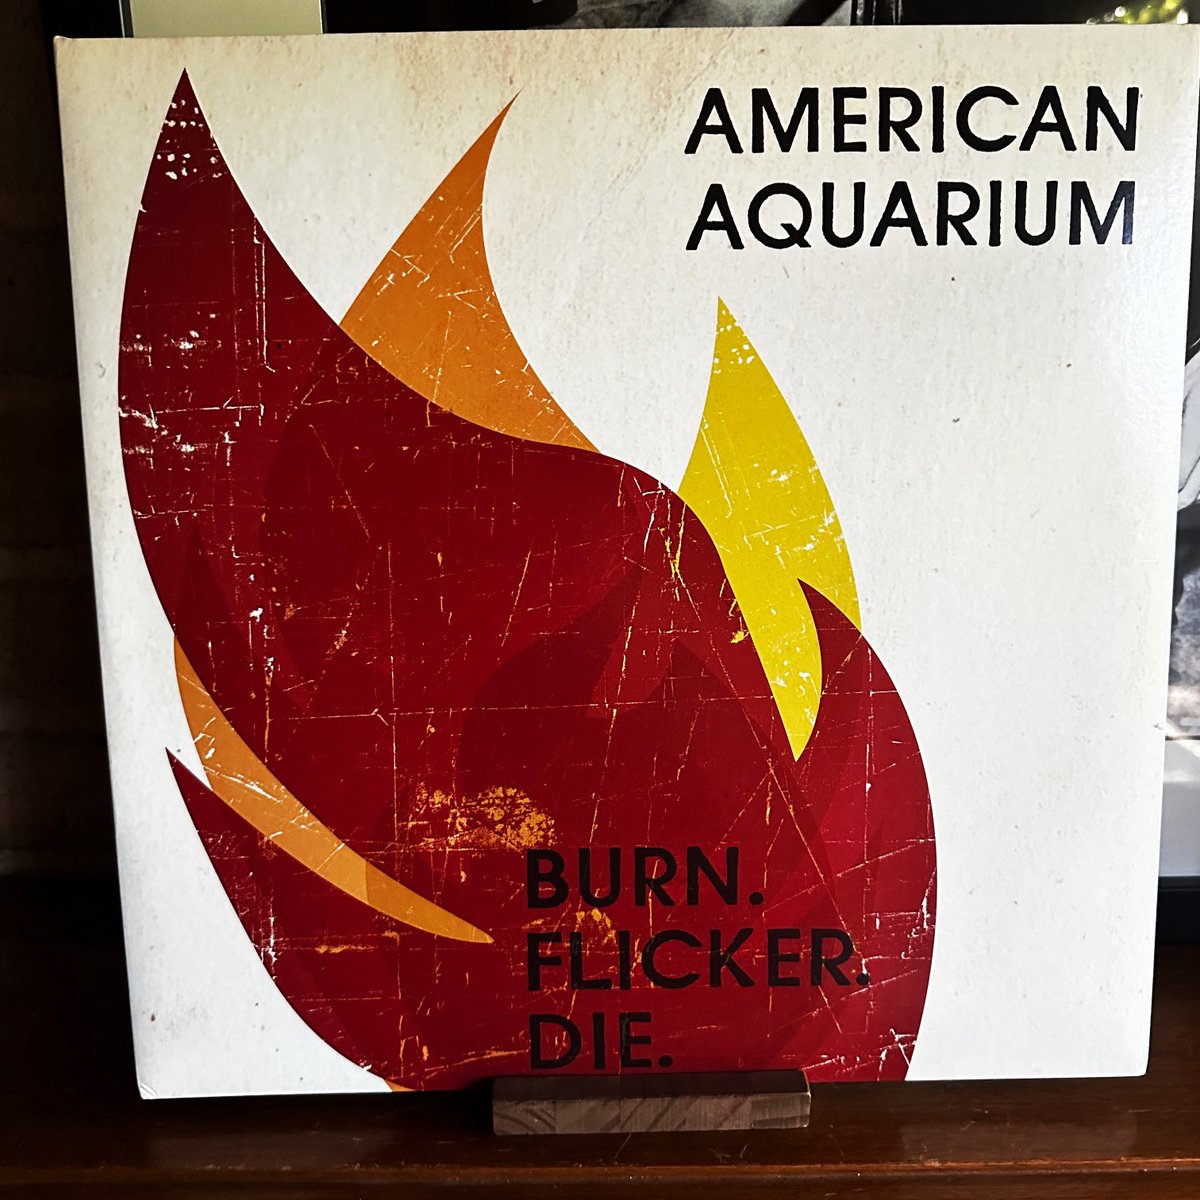 American Aquarium - Burn.Flicker.Die. 2012.  #vinyl #vinyls #vinylporn #vinyljunkie #vinylcollectionpost #vinylcollection #vinylcollector #vinylcollective #vinylcommunity #record #records  #recordcollection #recordcollector #nowplaying #nowspinning #americanaquarium